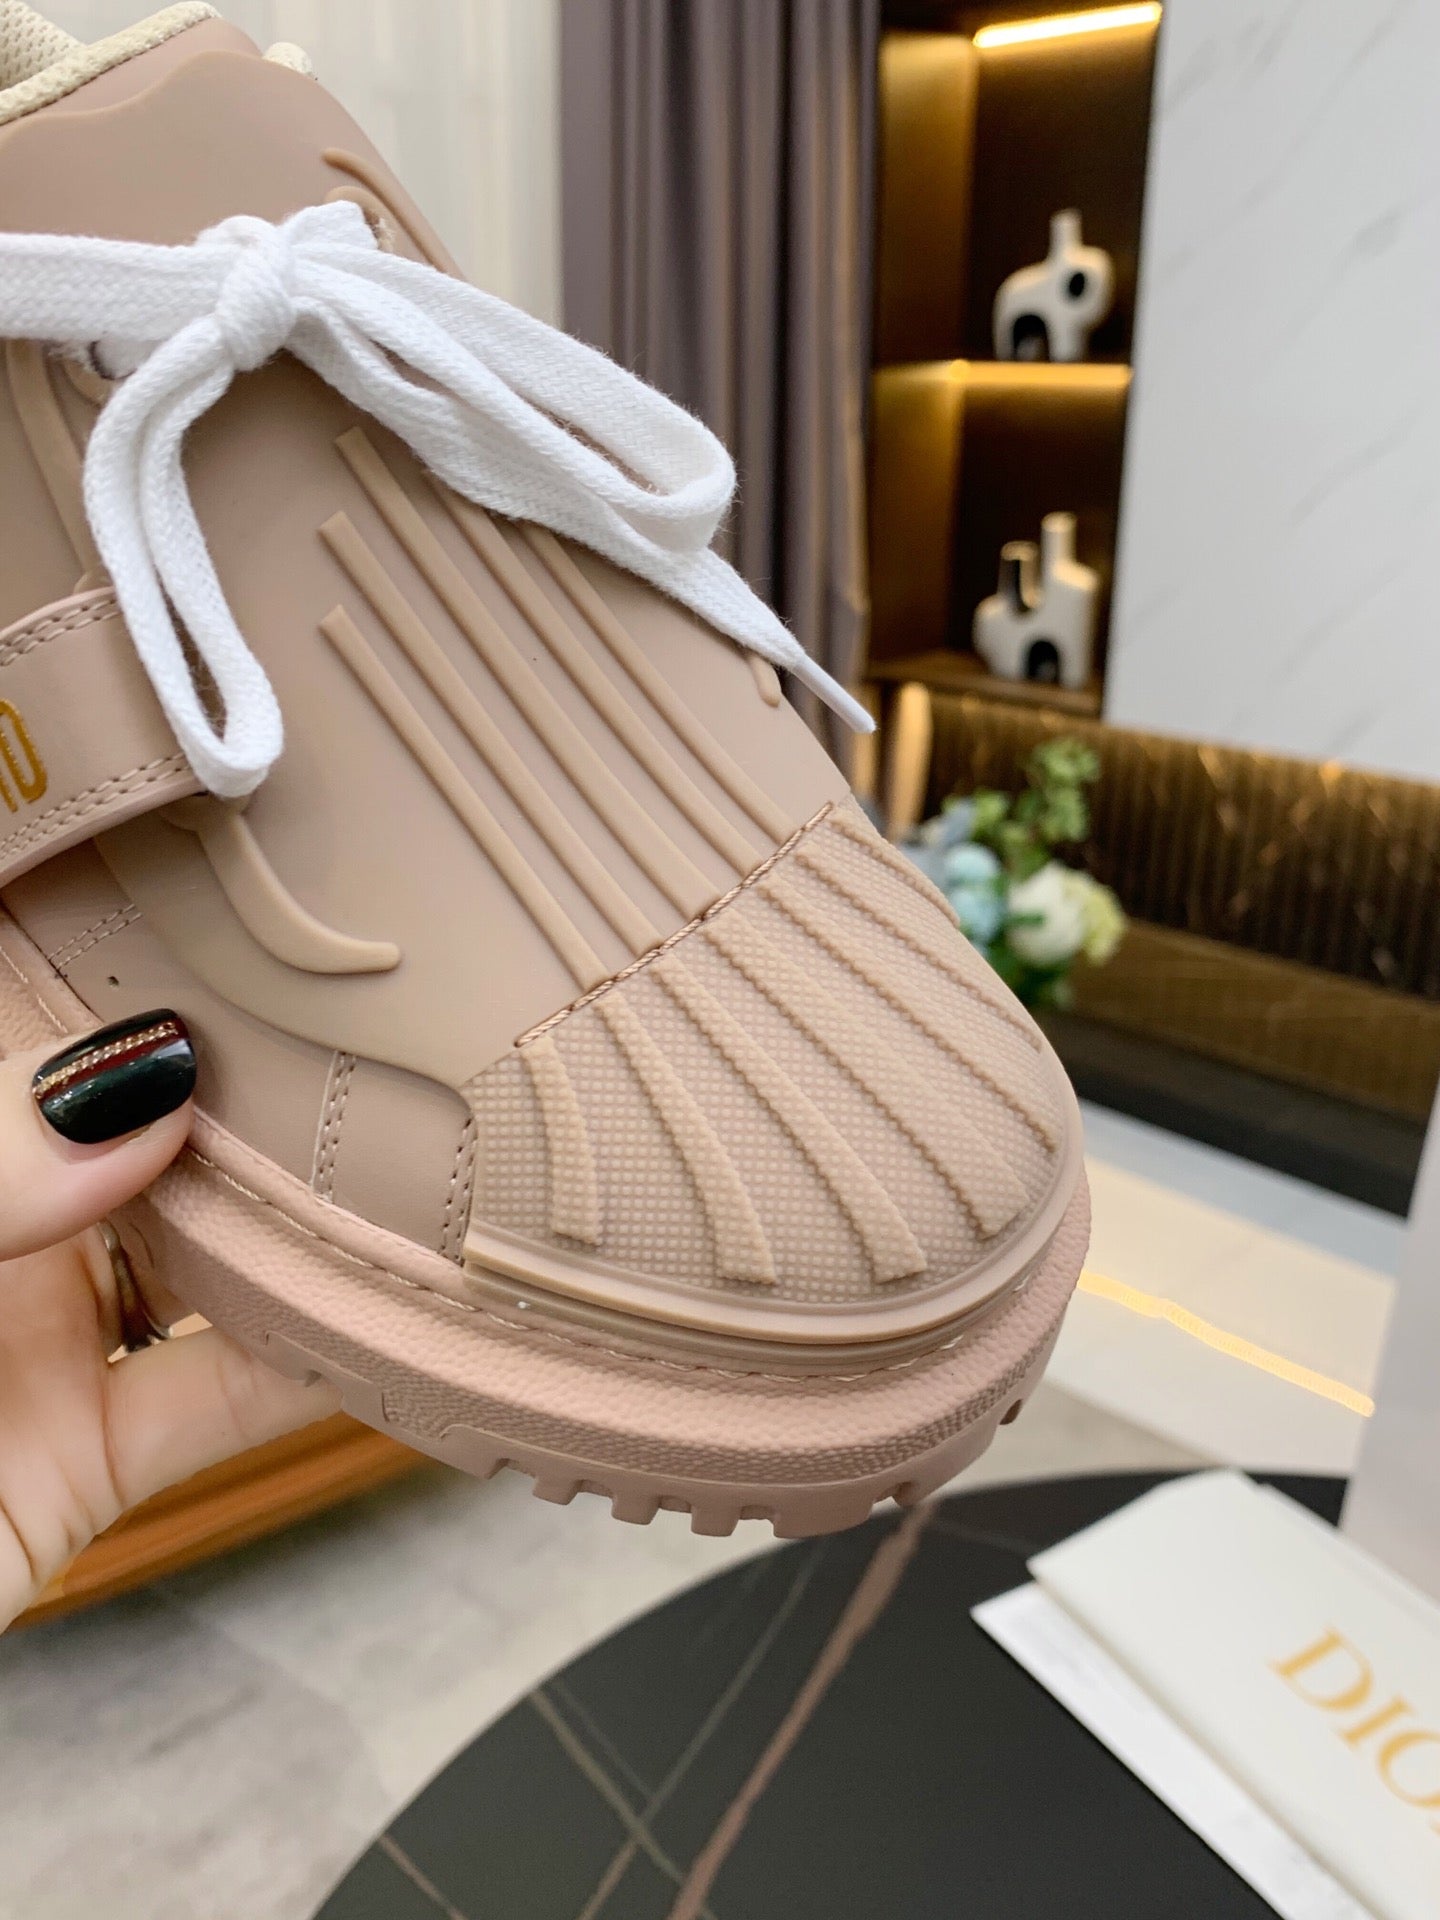 Christian Dior Women Fashion Sneaker Shoes 17